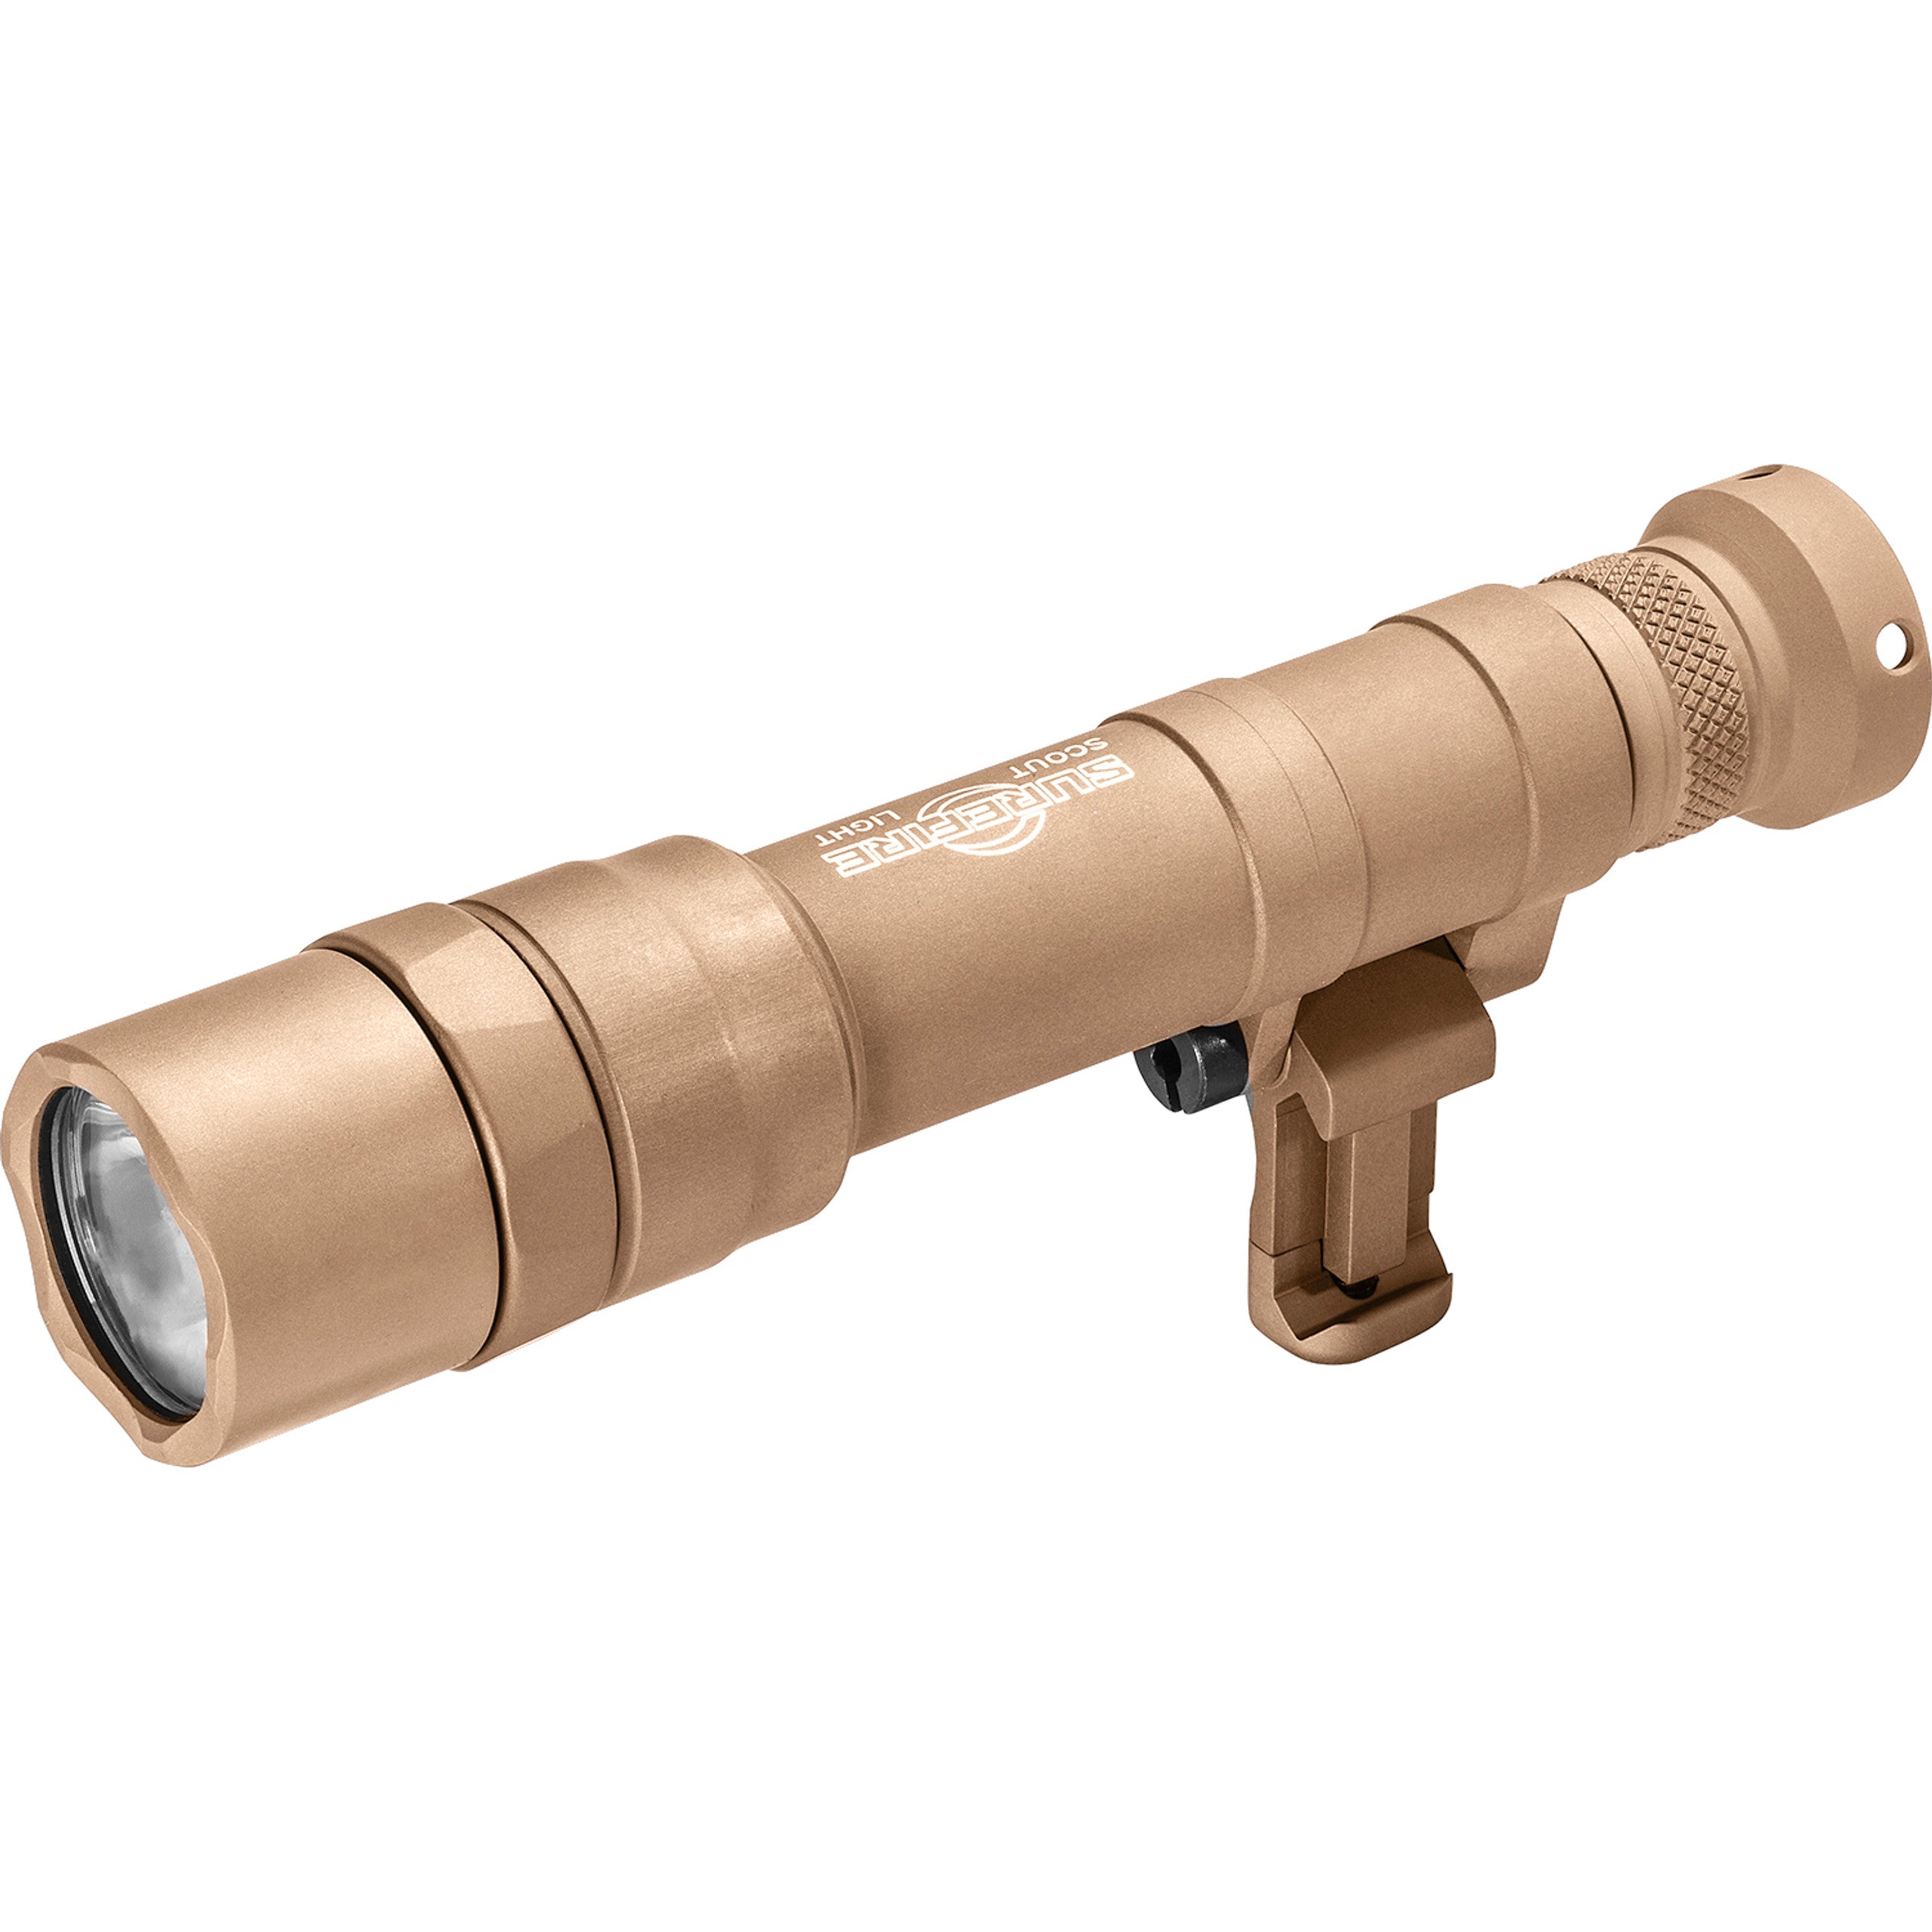 SUREFIRE Scout Light Pro Dual Fuel Weapon Light